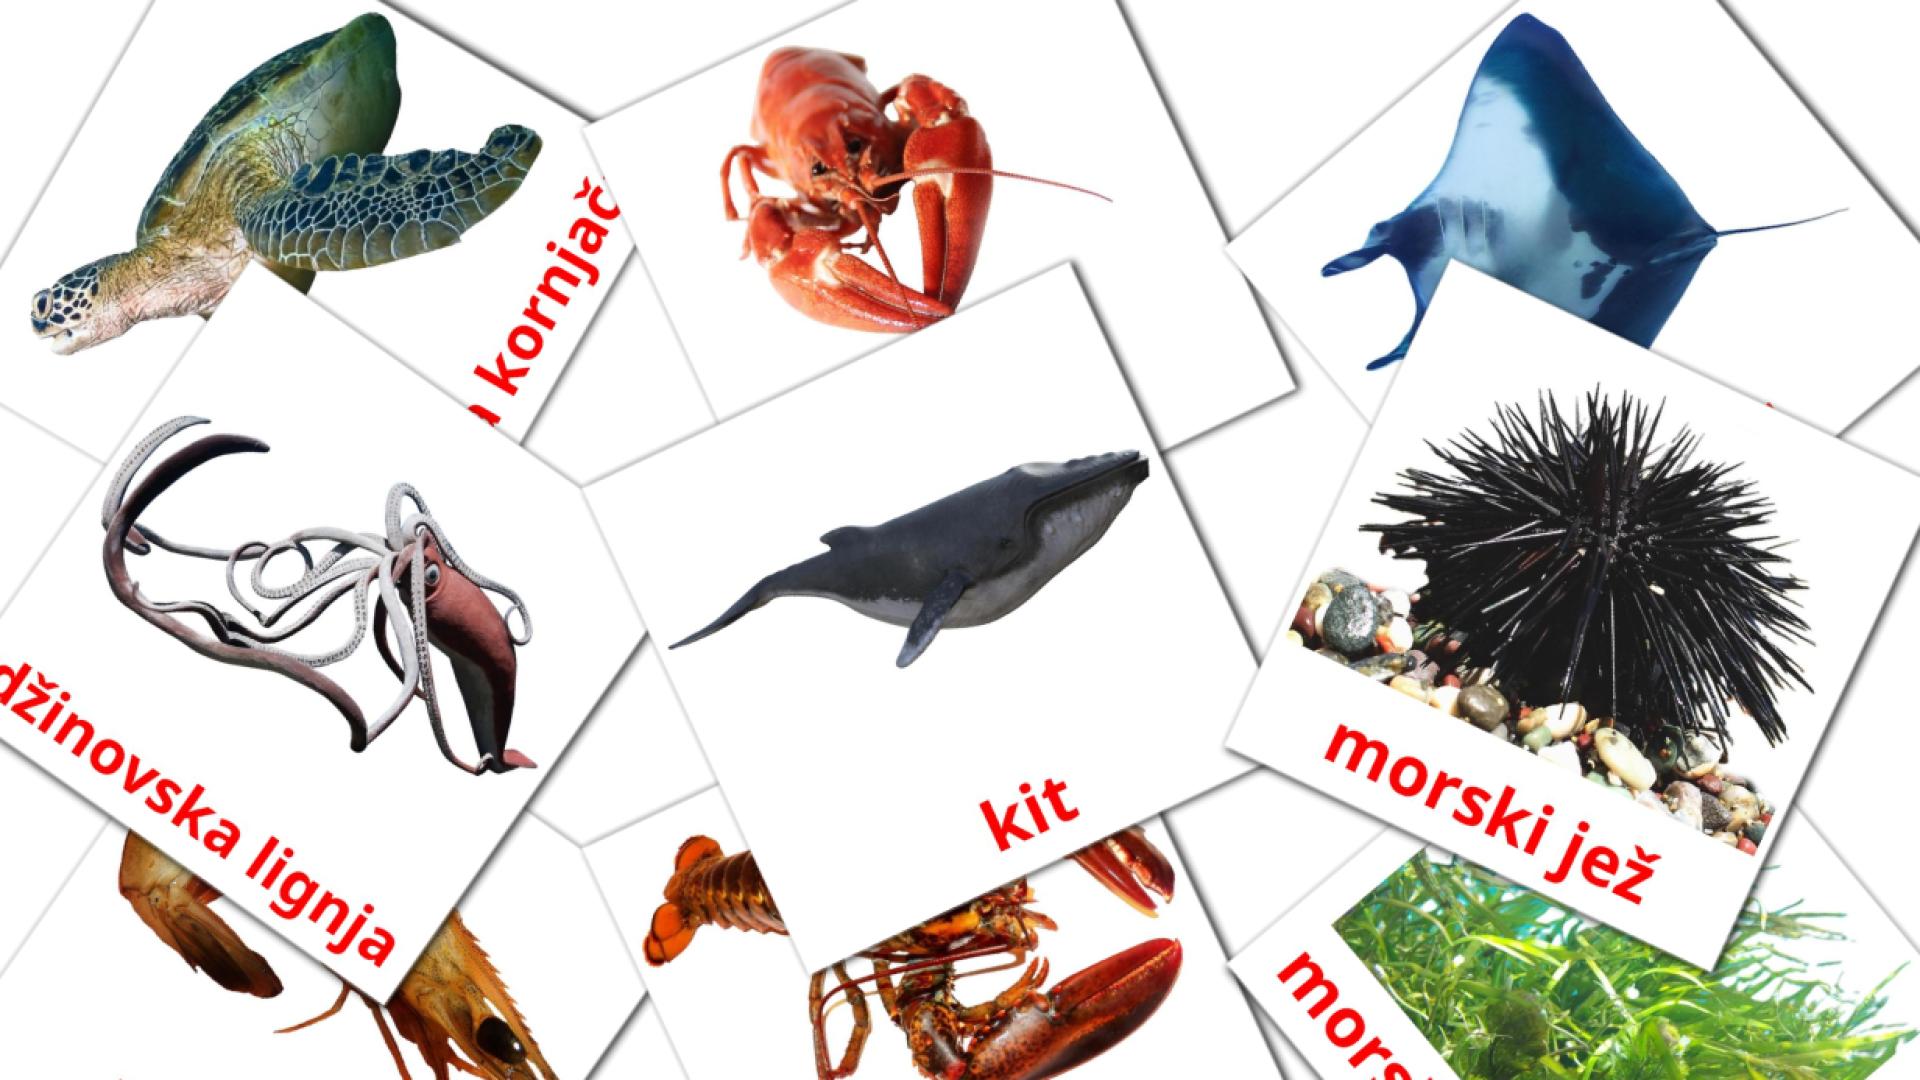 Bildkarten für morske životinje